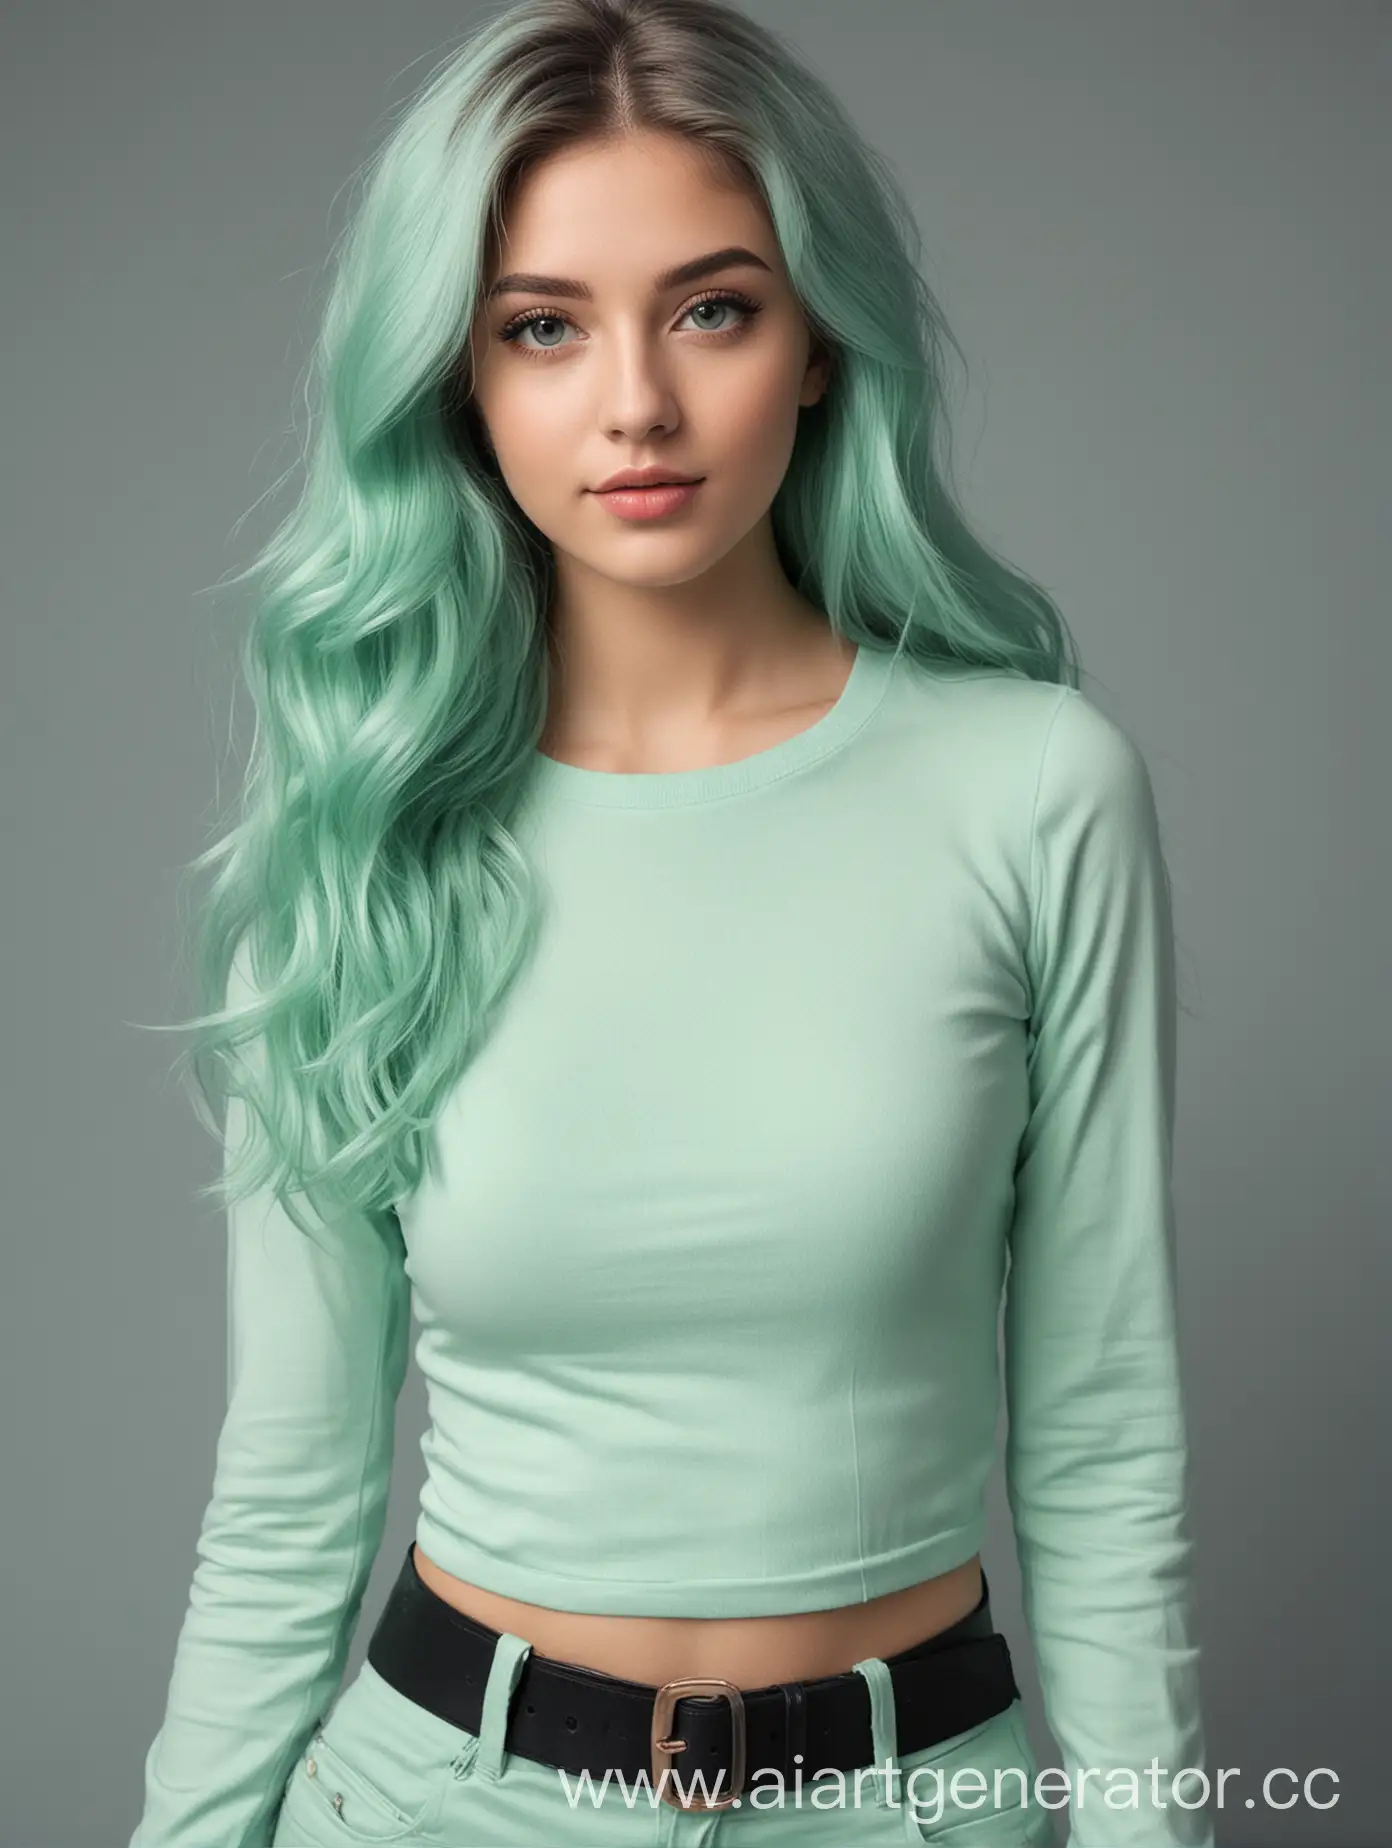 девушка модель 23 года красивая с волосом мятного цвета по пояс
 